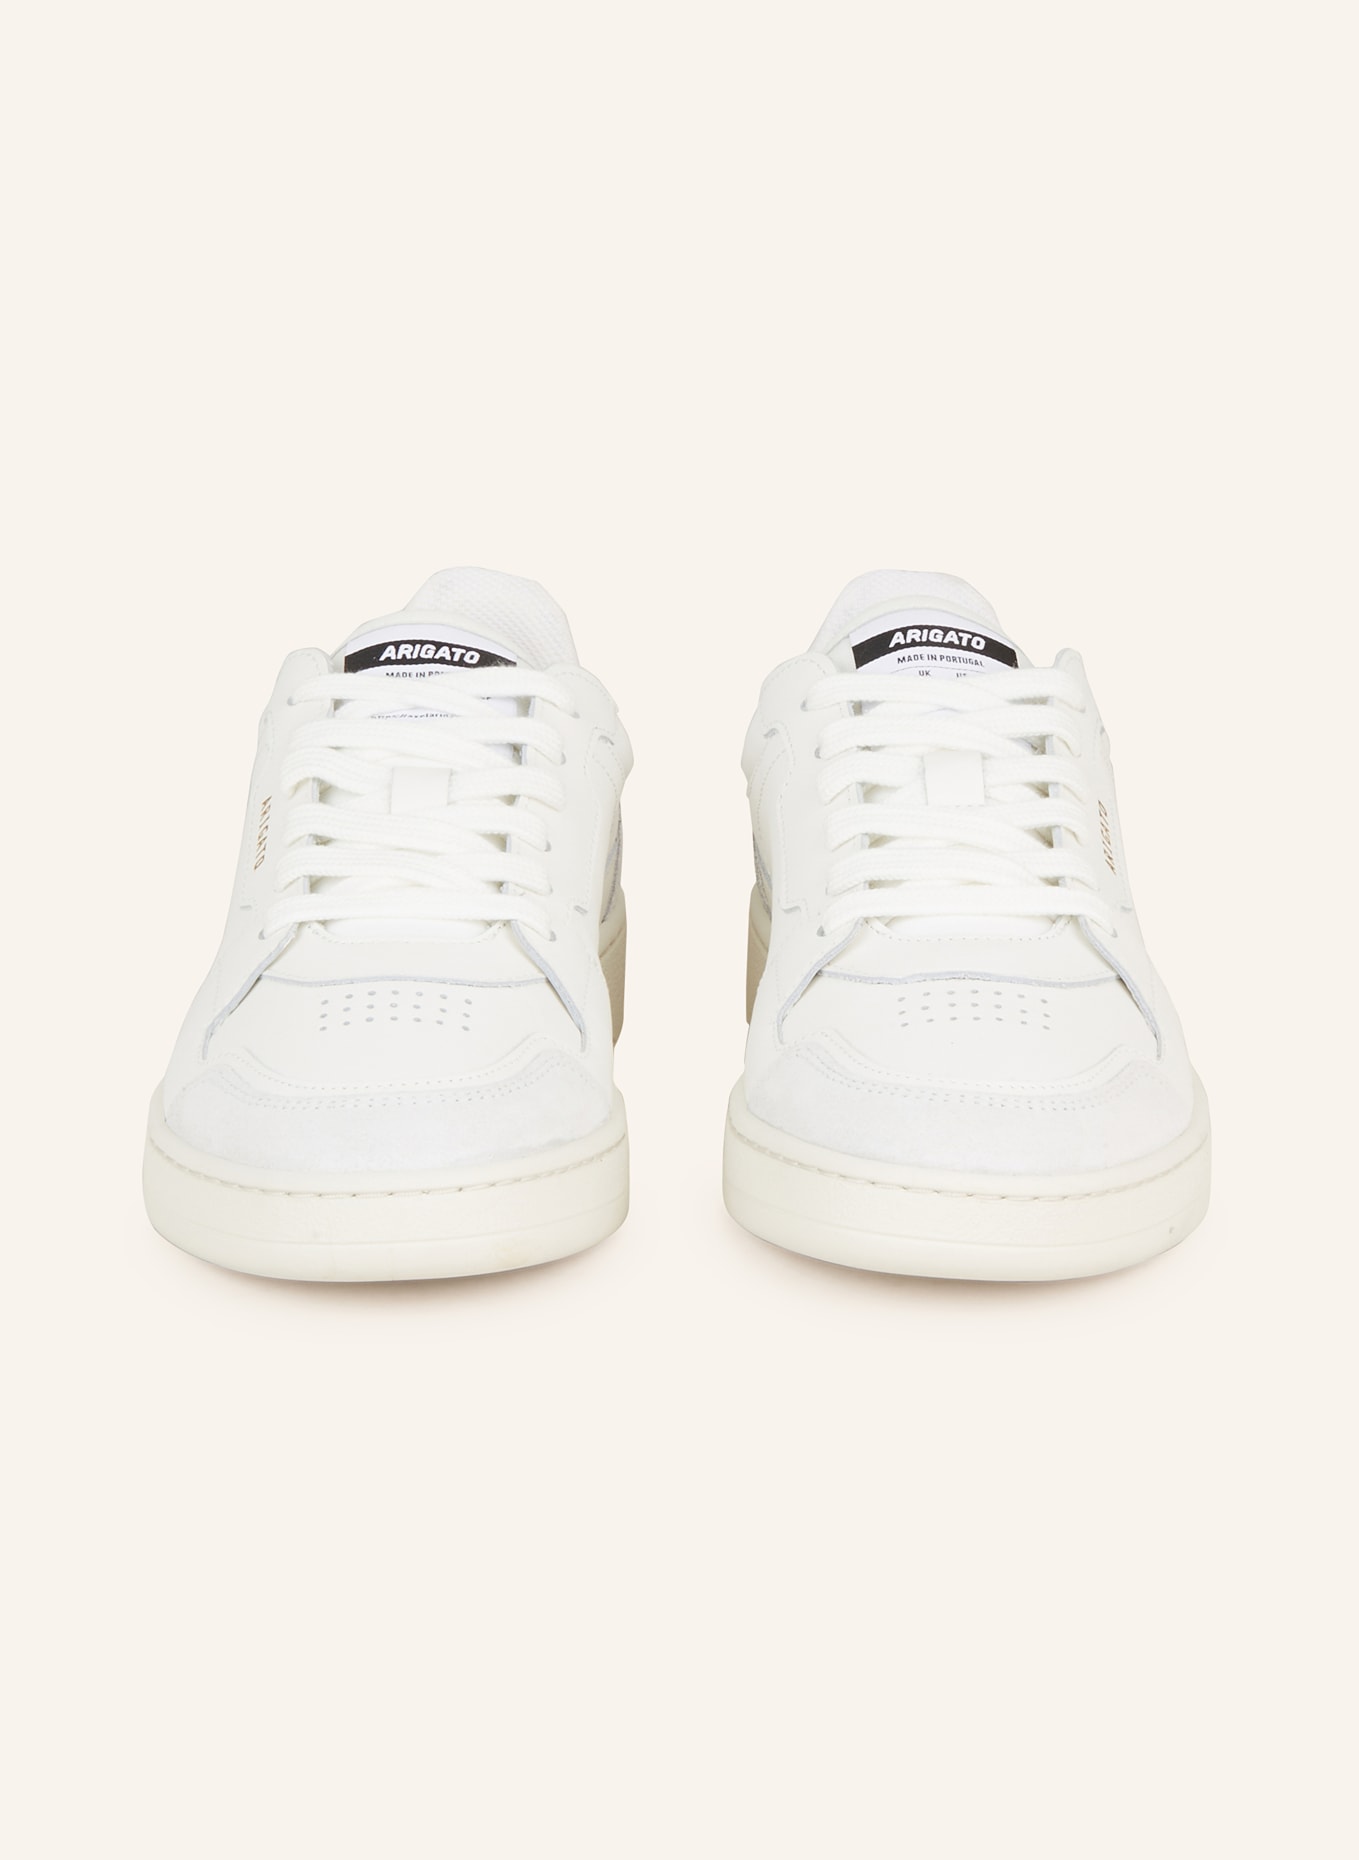 AXEL ARIGATO Sneakers DICE LO, Color: WHITE/ LIGHT GRAY (Image 3)